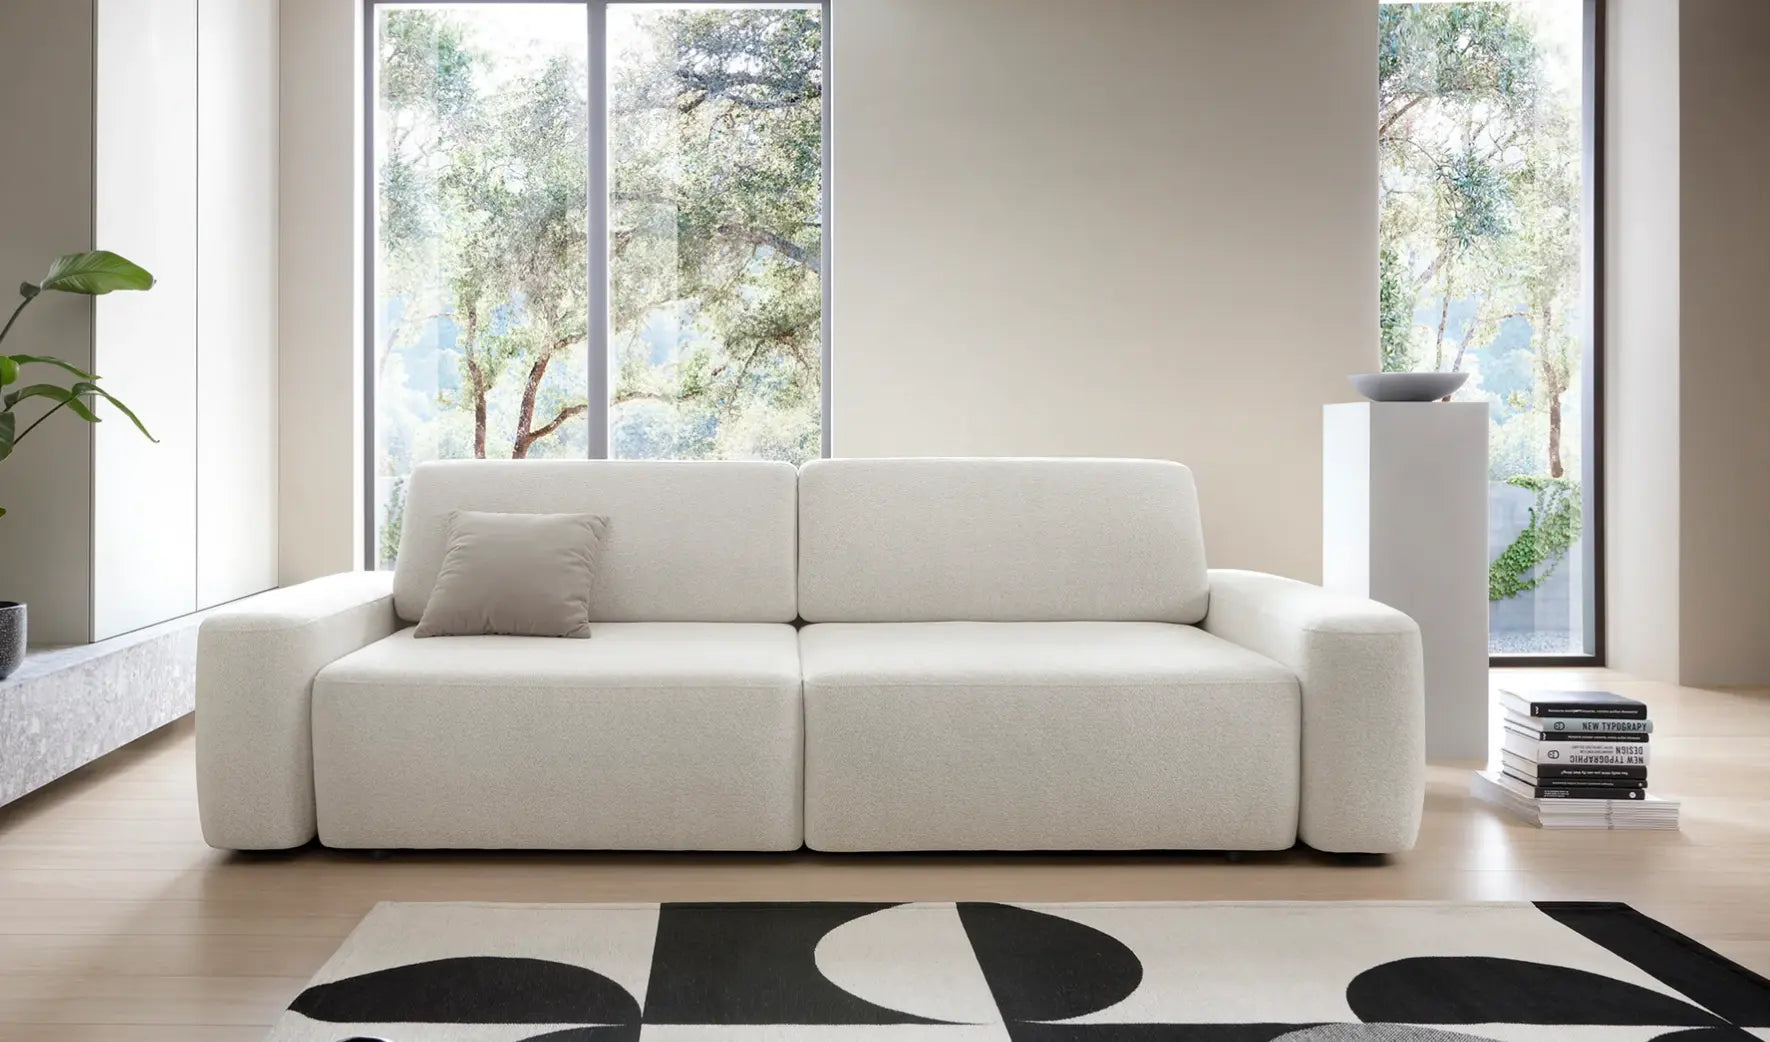 IVY - canapé 2 places blanc  dans un salon épuré avec une grande baie vitrée, un grand parquet en bois, un meuble tv, un tapis noir et blanc